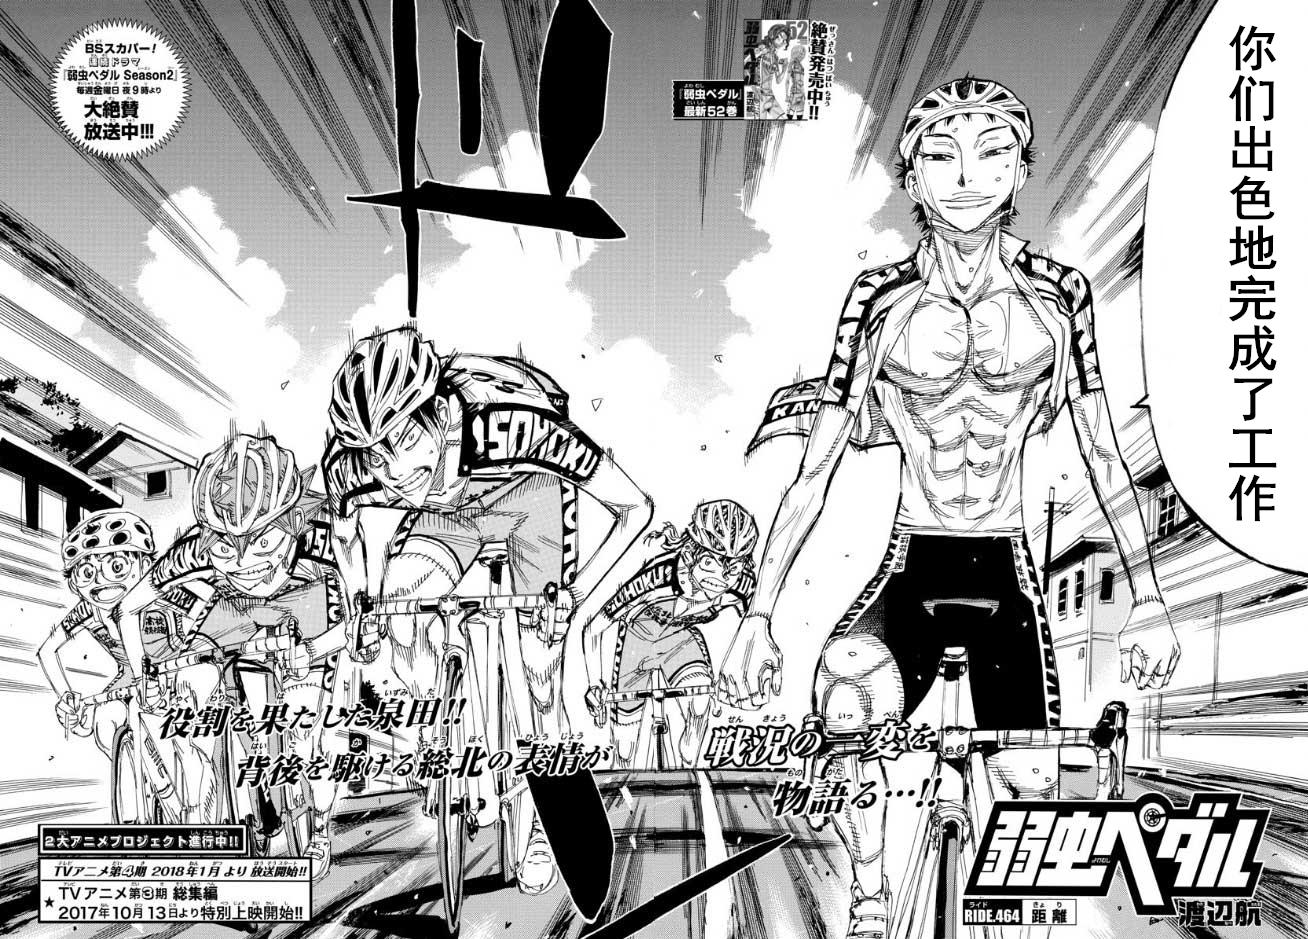 Chapter 464, Yowamushi Pedal Go!! Wiki